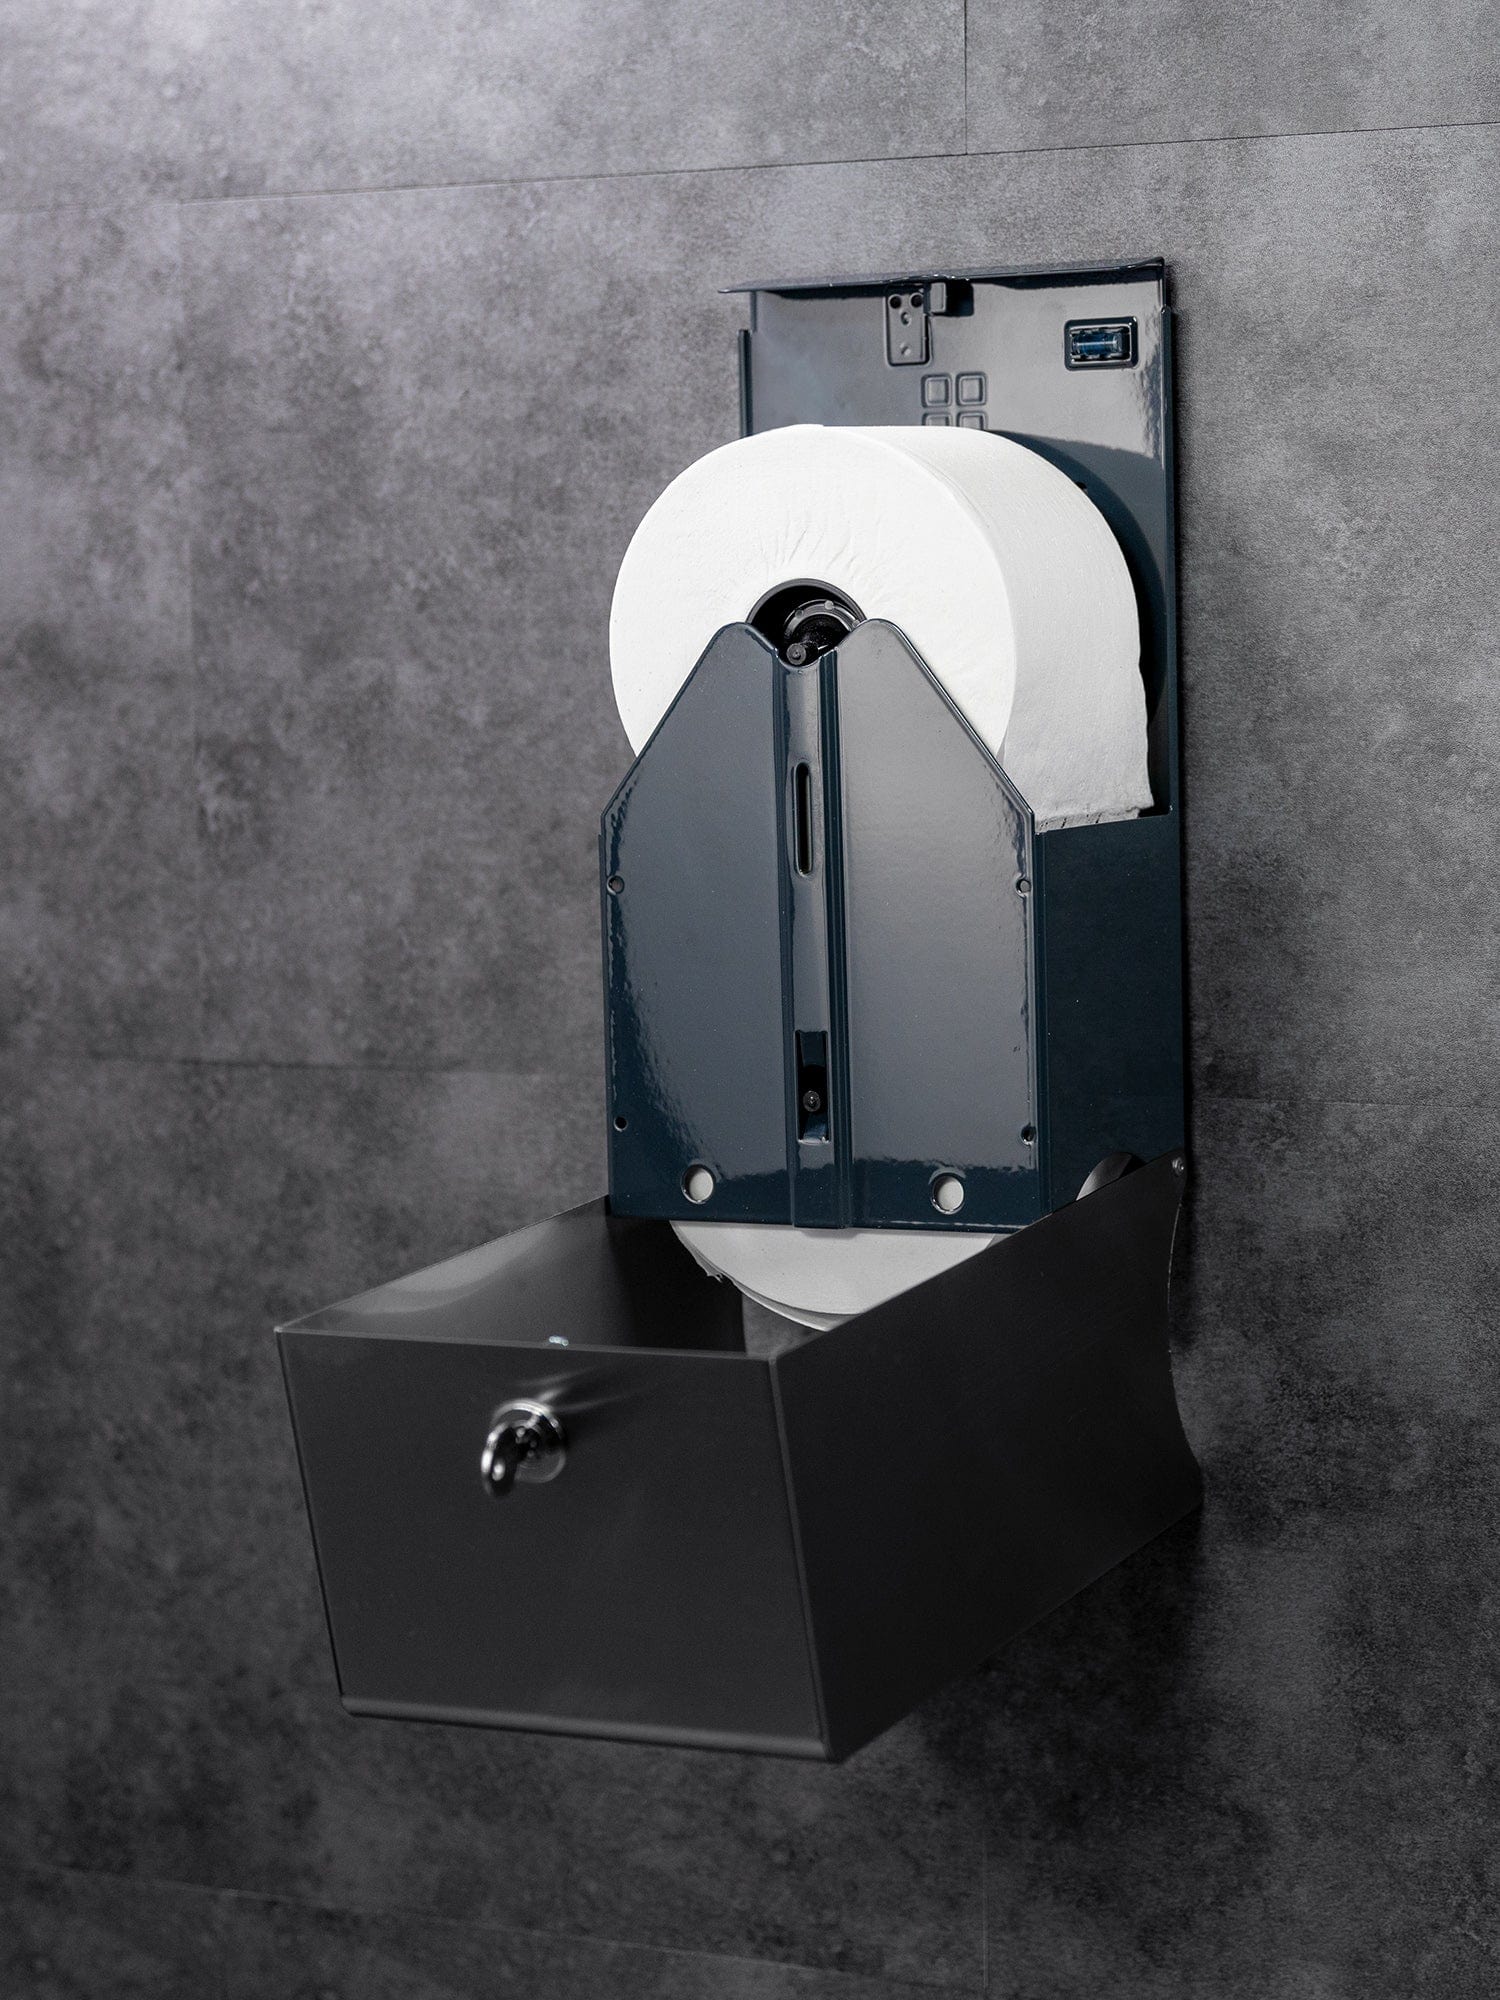 user friendly toilet roll dispenser